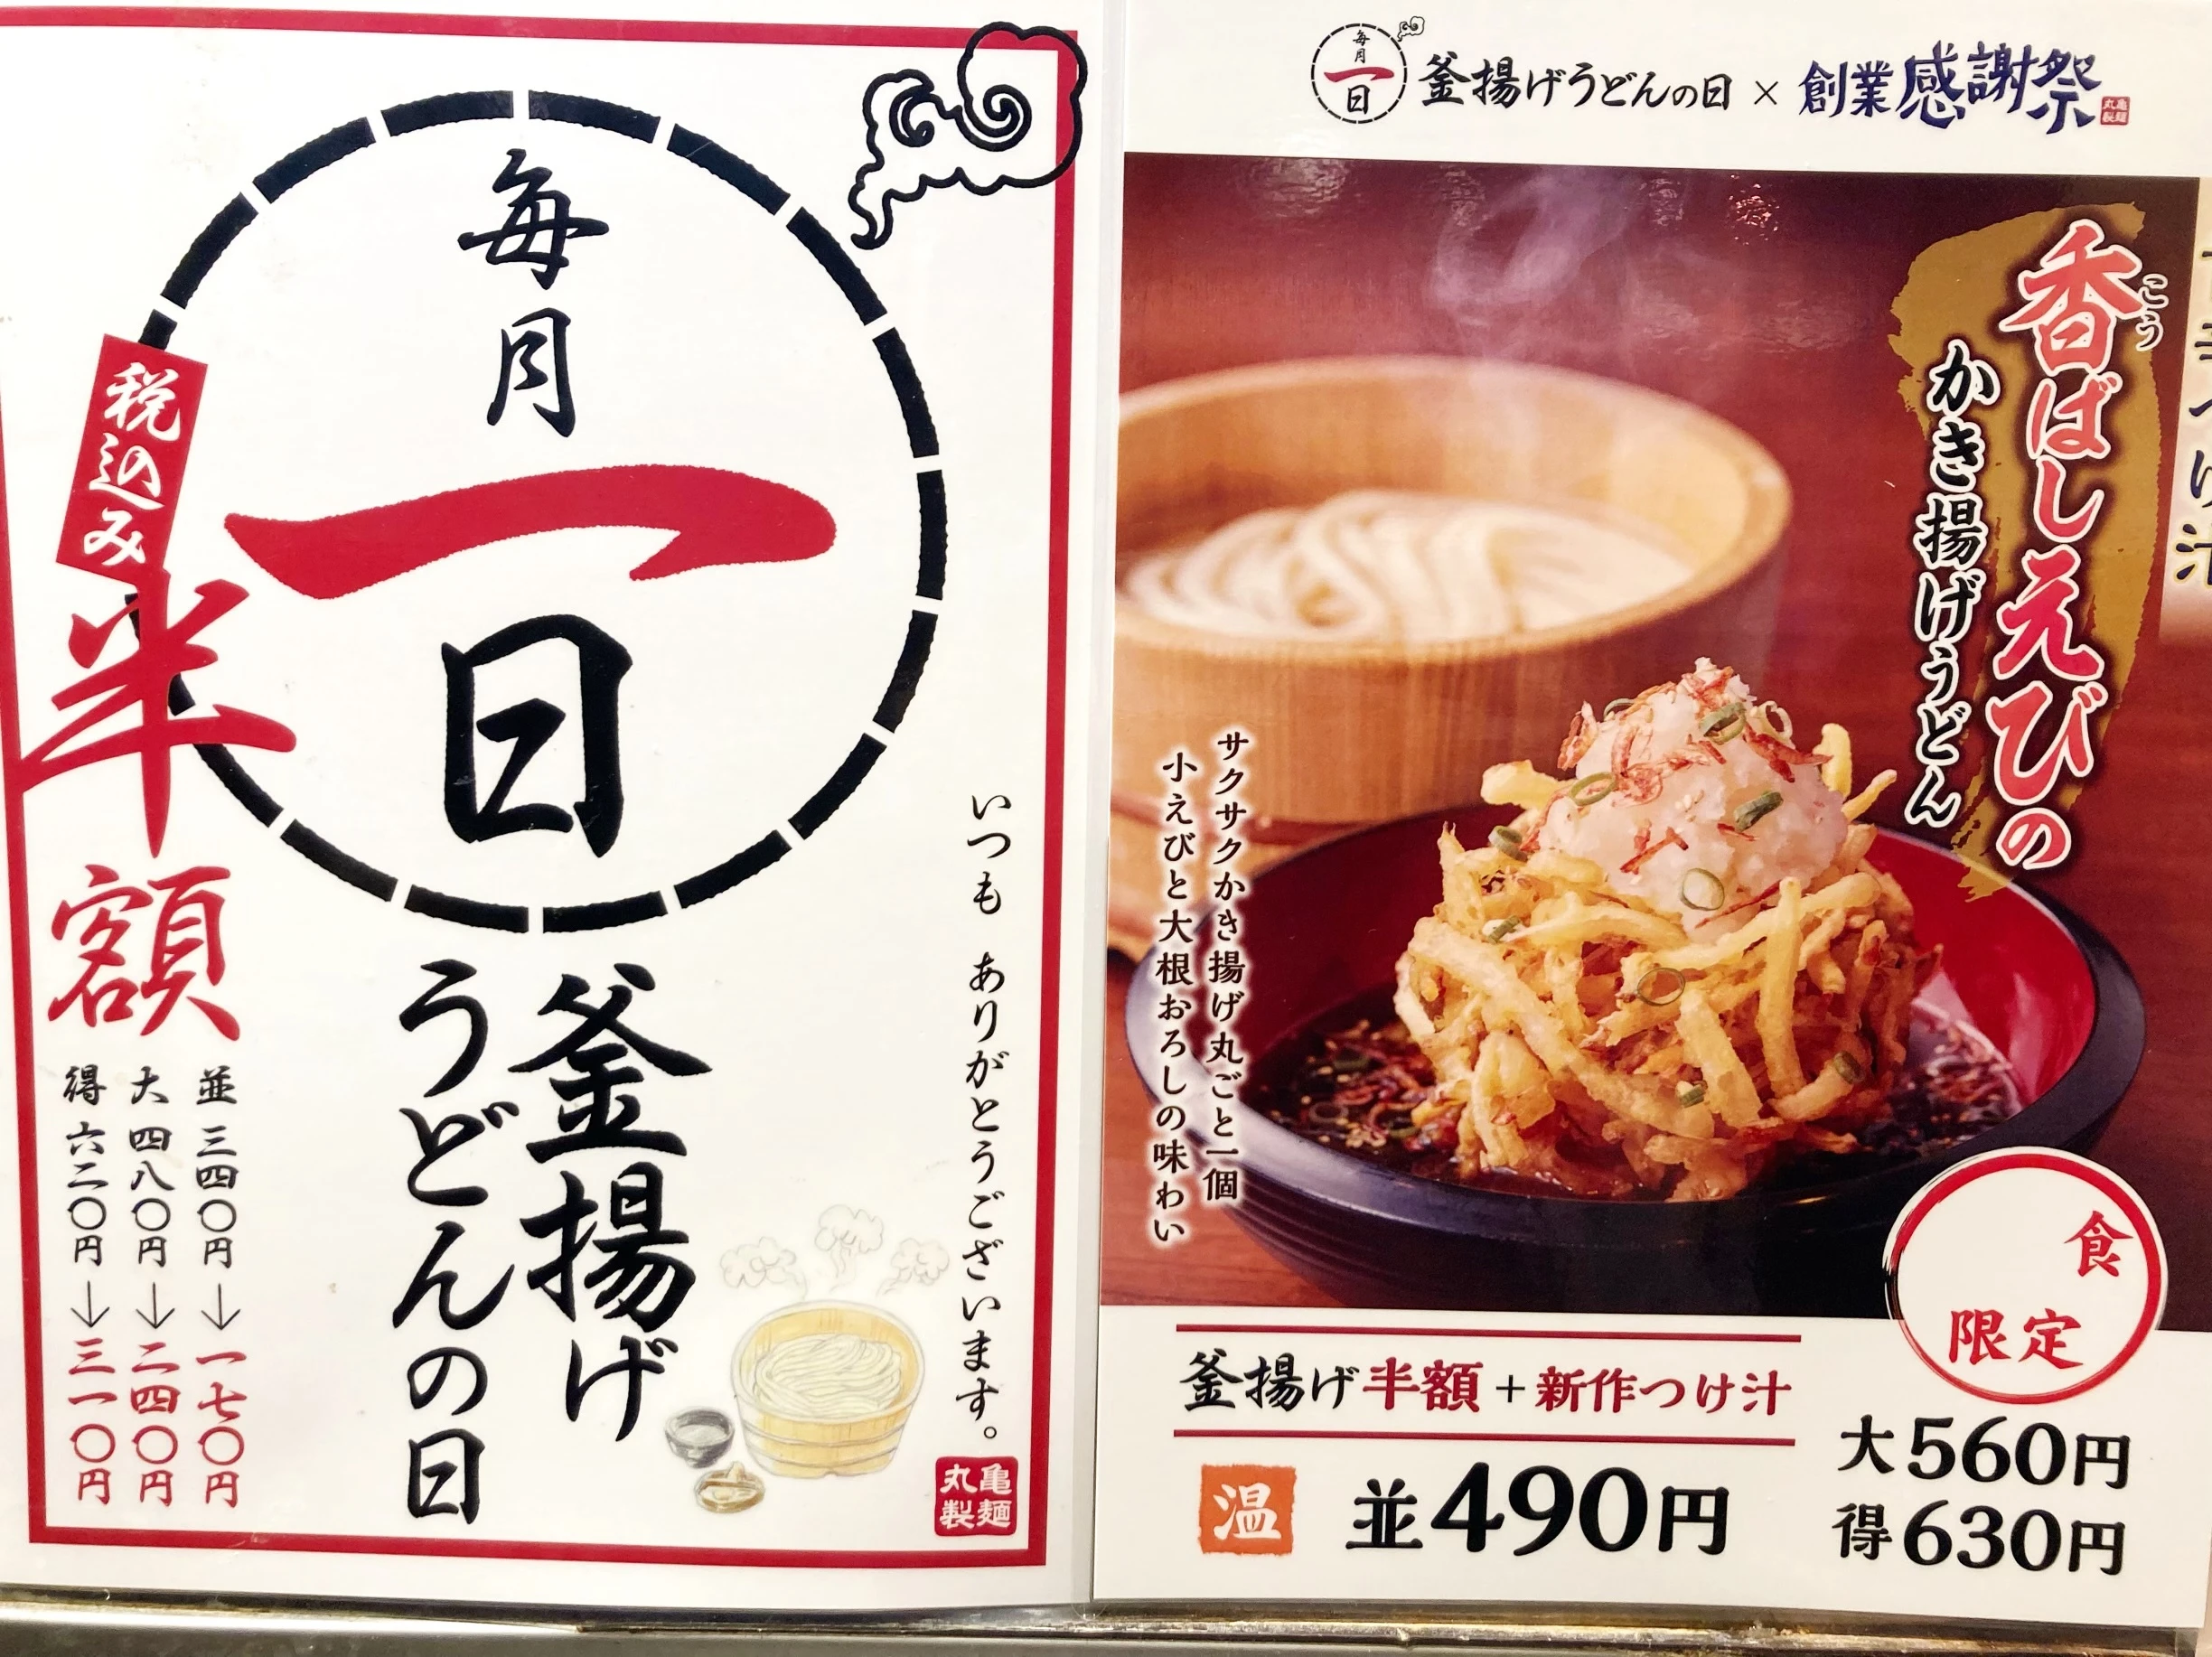 丸亀製麺「釜揚げうどんの日」「創業感謝祭」店内ポスター